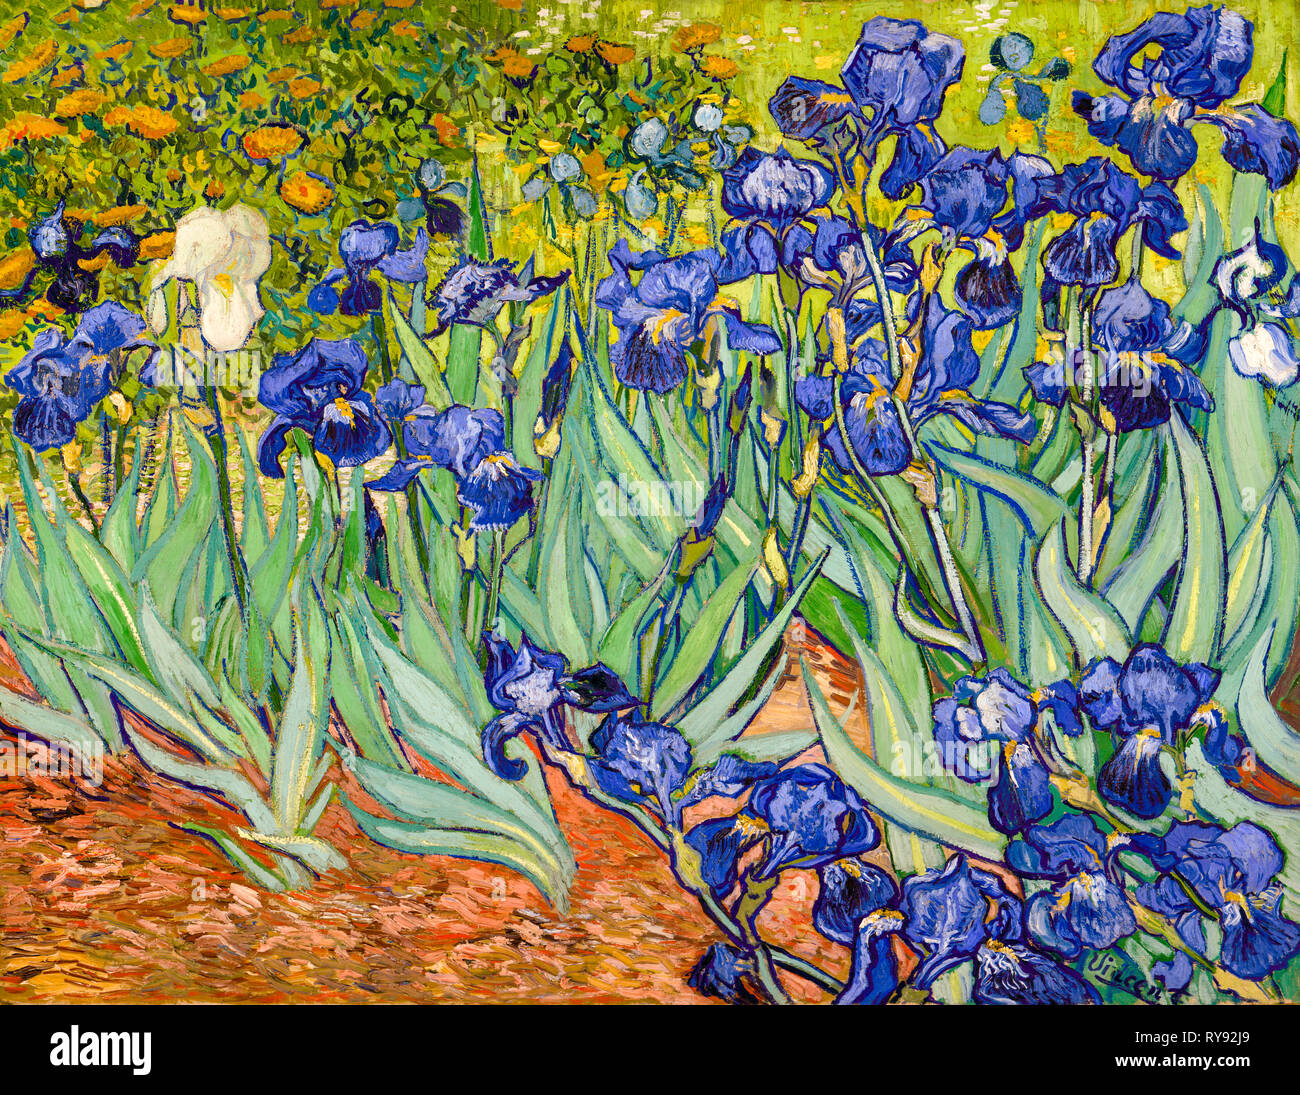 Iris, peinture post-impressionniste de Vincent van Gogh, 1889 Banque D'Images